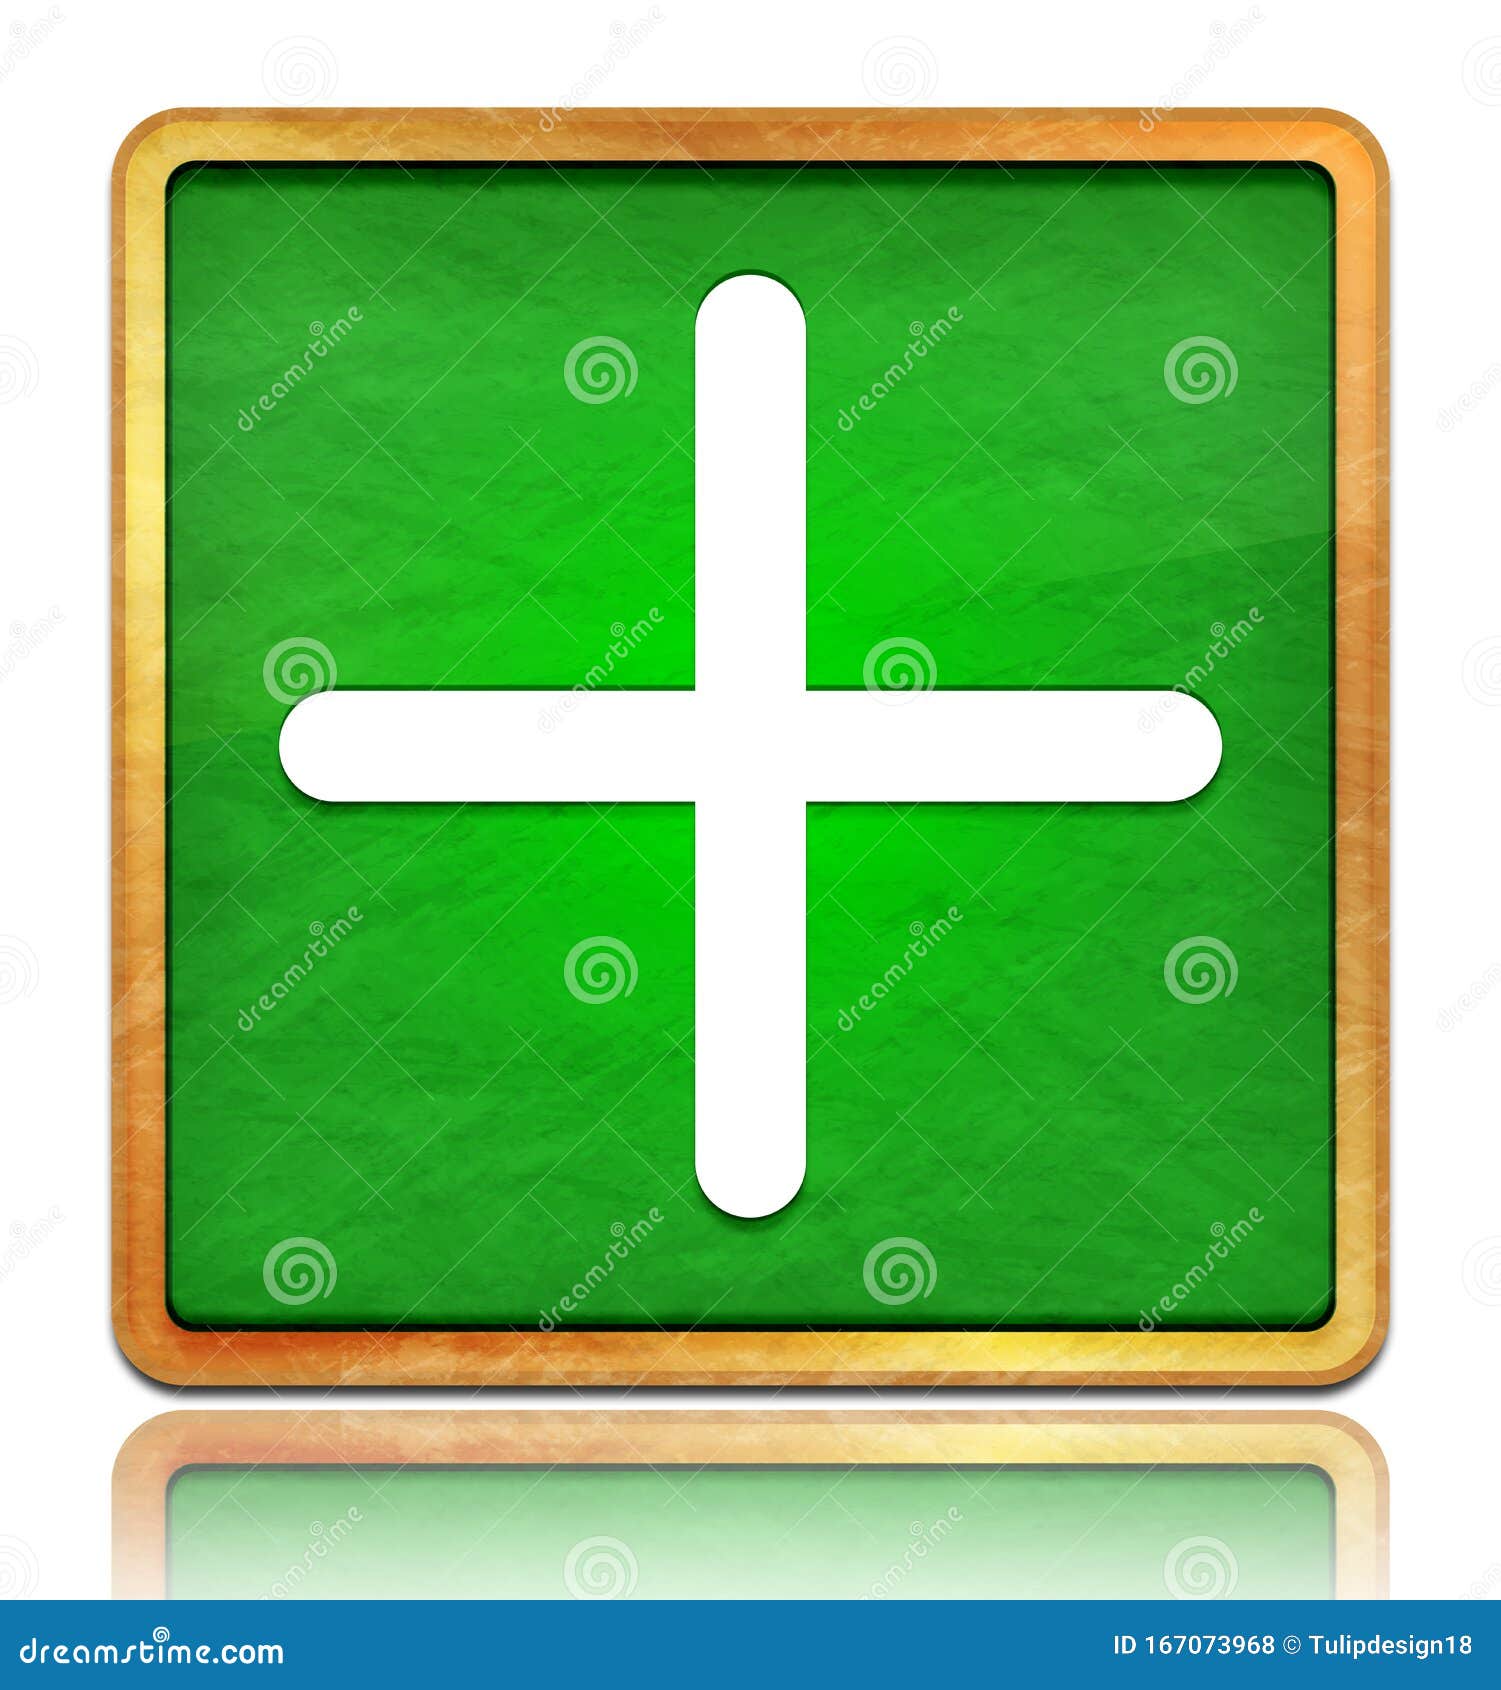 Biểu tượng cộng trên bảng phấn ô vuông màu xanh lá cây làm nổi bật hơn thông điệp quan trọng cần đưa ra. Hãy xem nó trên ảnh ngay thôi!